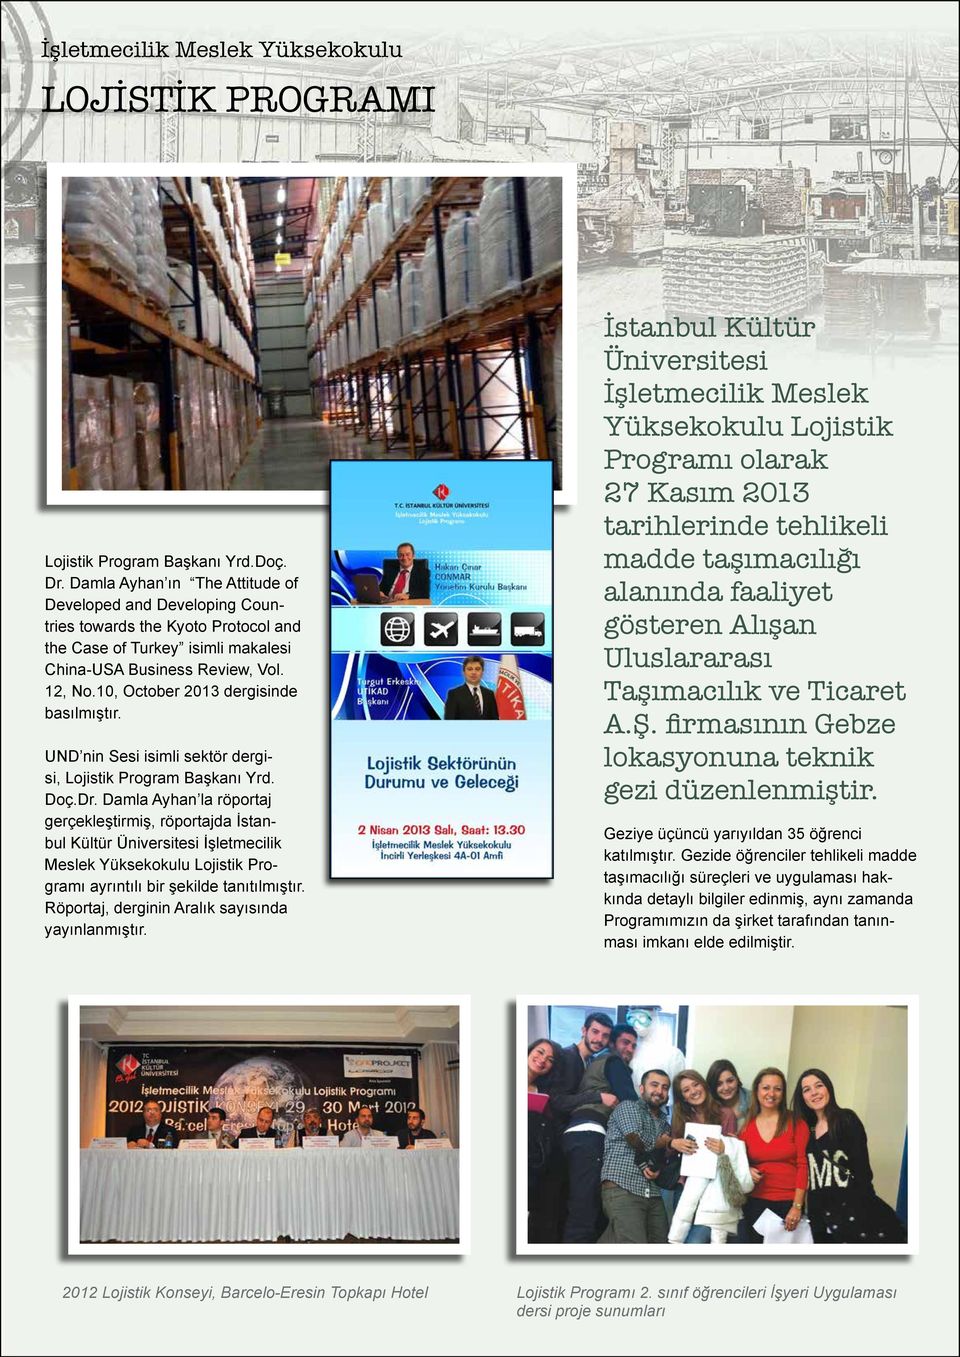 10, October 2013 dergisinde basılmıştır. UND nin Sesi isimli sektör dergisi, Lojistik Program Başkanı Yrd. Doç.Dr.